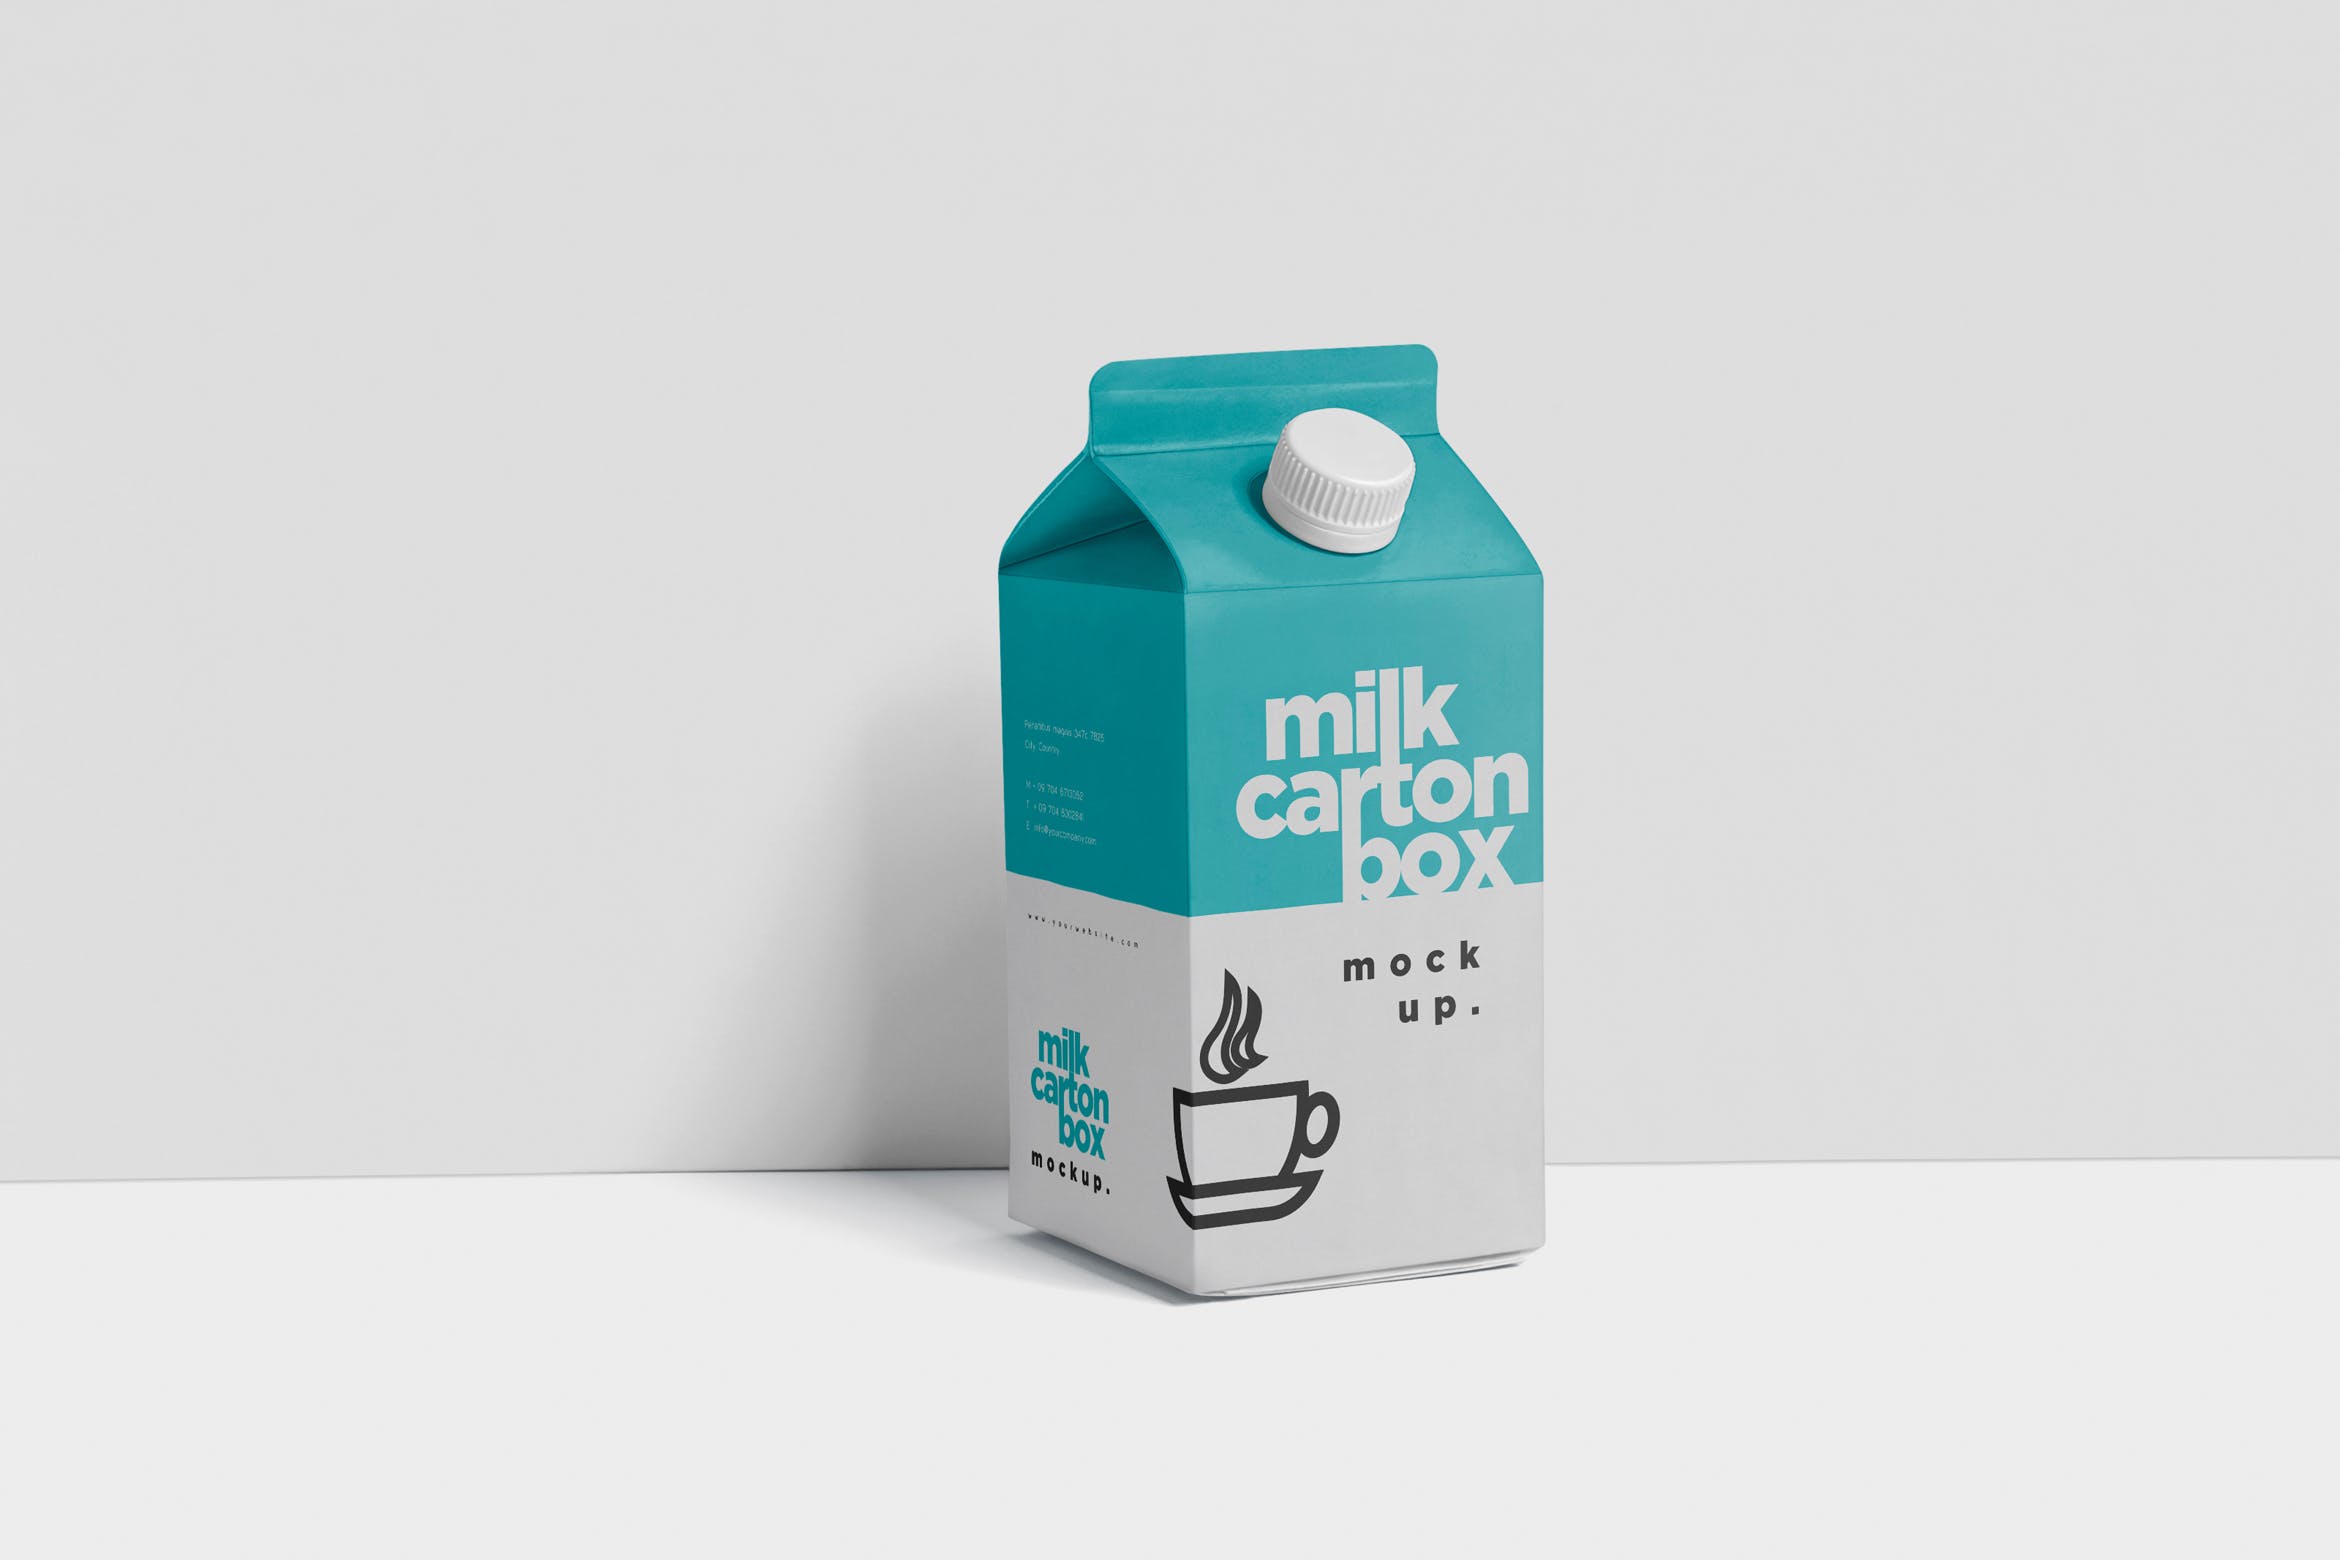 果汁/牛奶饮料纸盒包装效果图样机 Juice – Milk Mockup in 500ml Carton Box插图